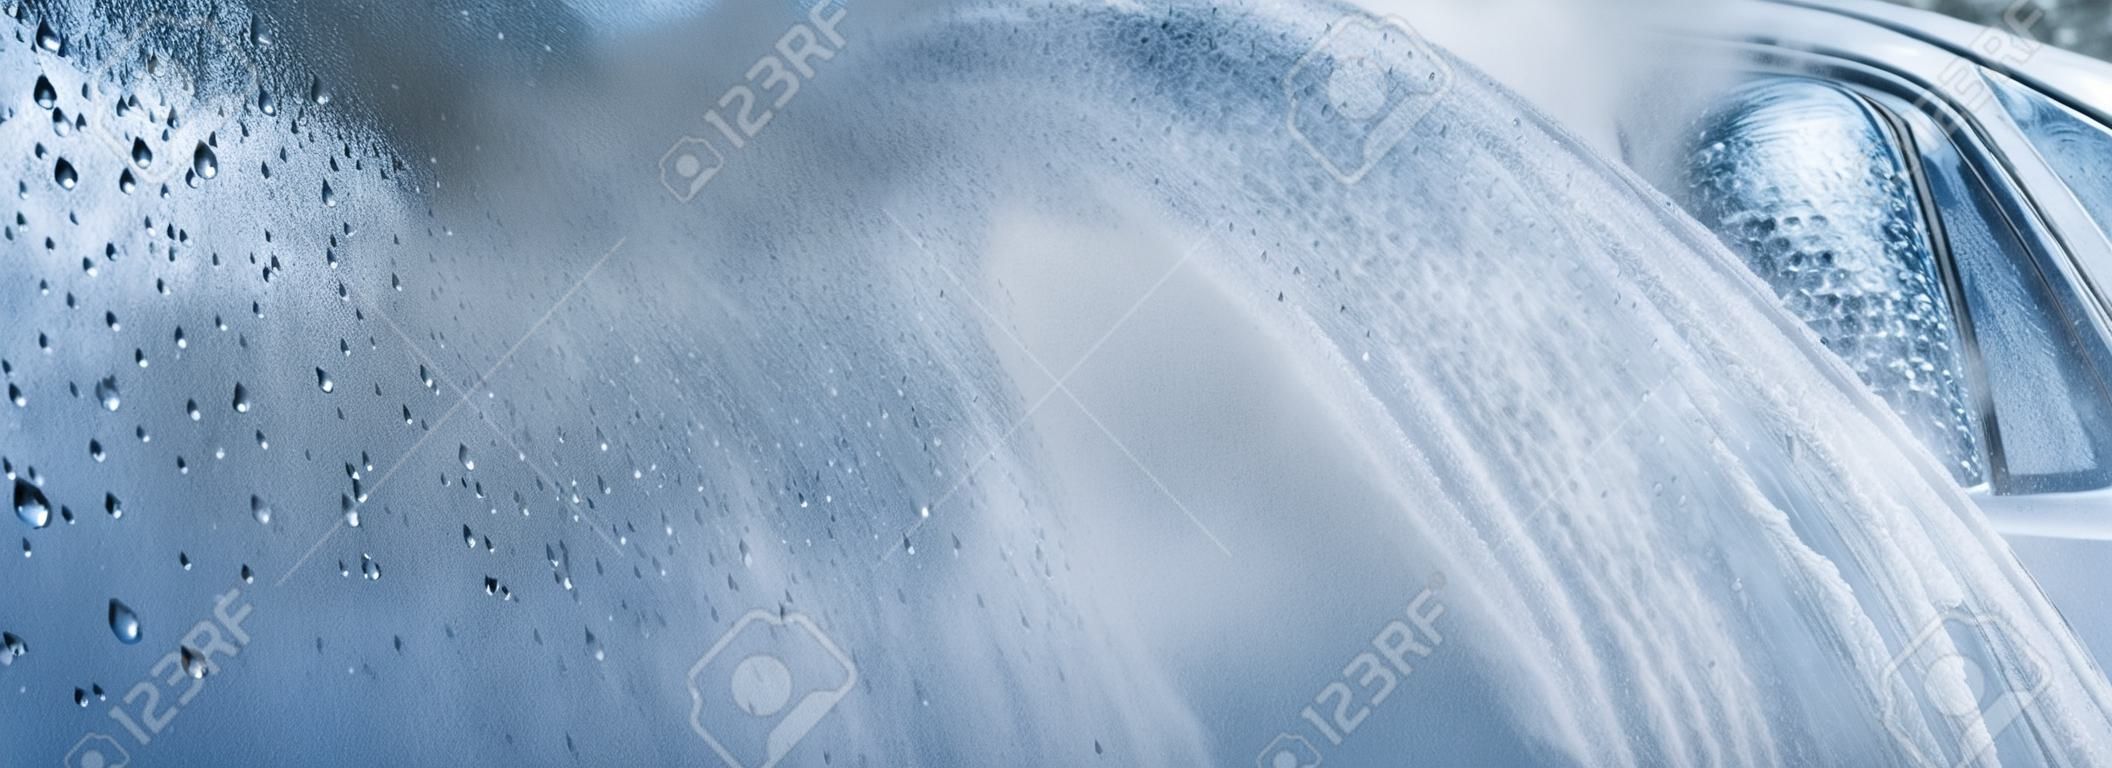 抽象的な洗車バナーは、水滴だけに焦点を当て、焦点を合わせずに車に噴霧し、水色で調色。